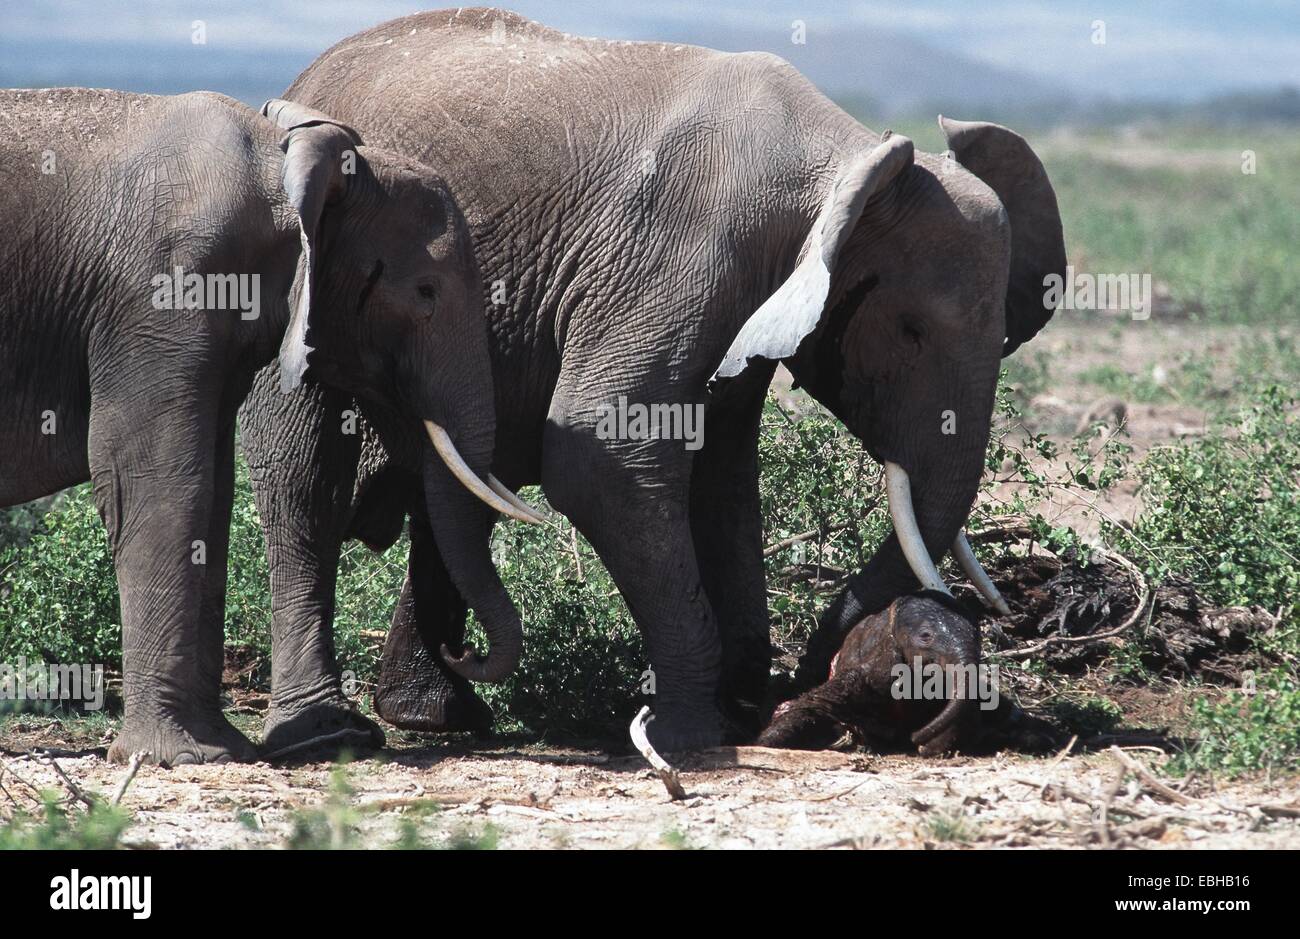 African elephant (Loxodonta africana). Stock Photo